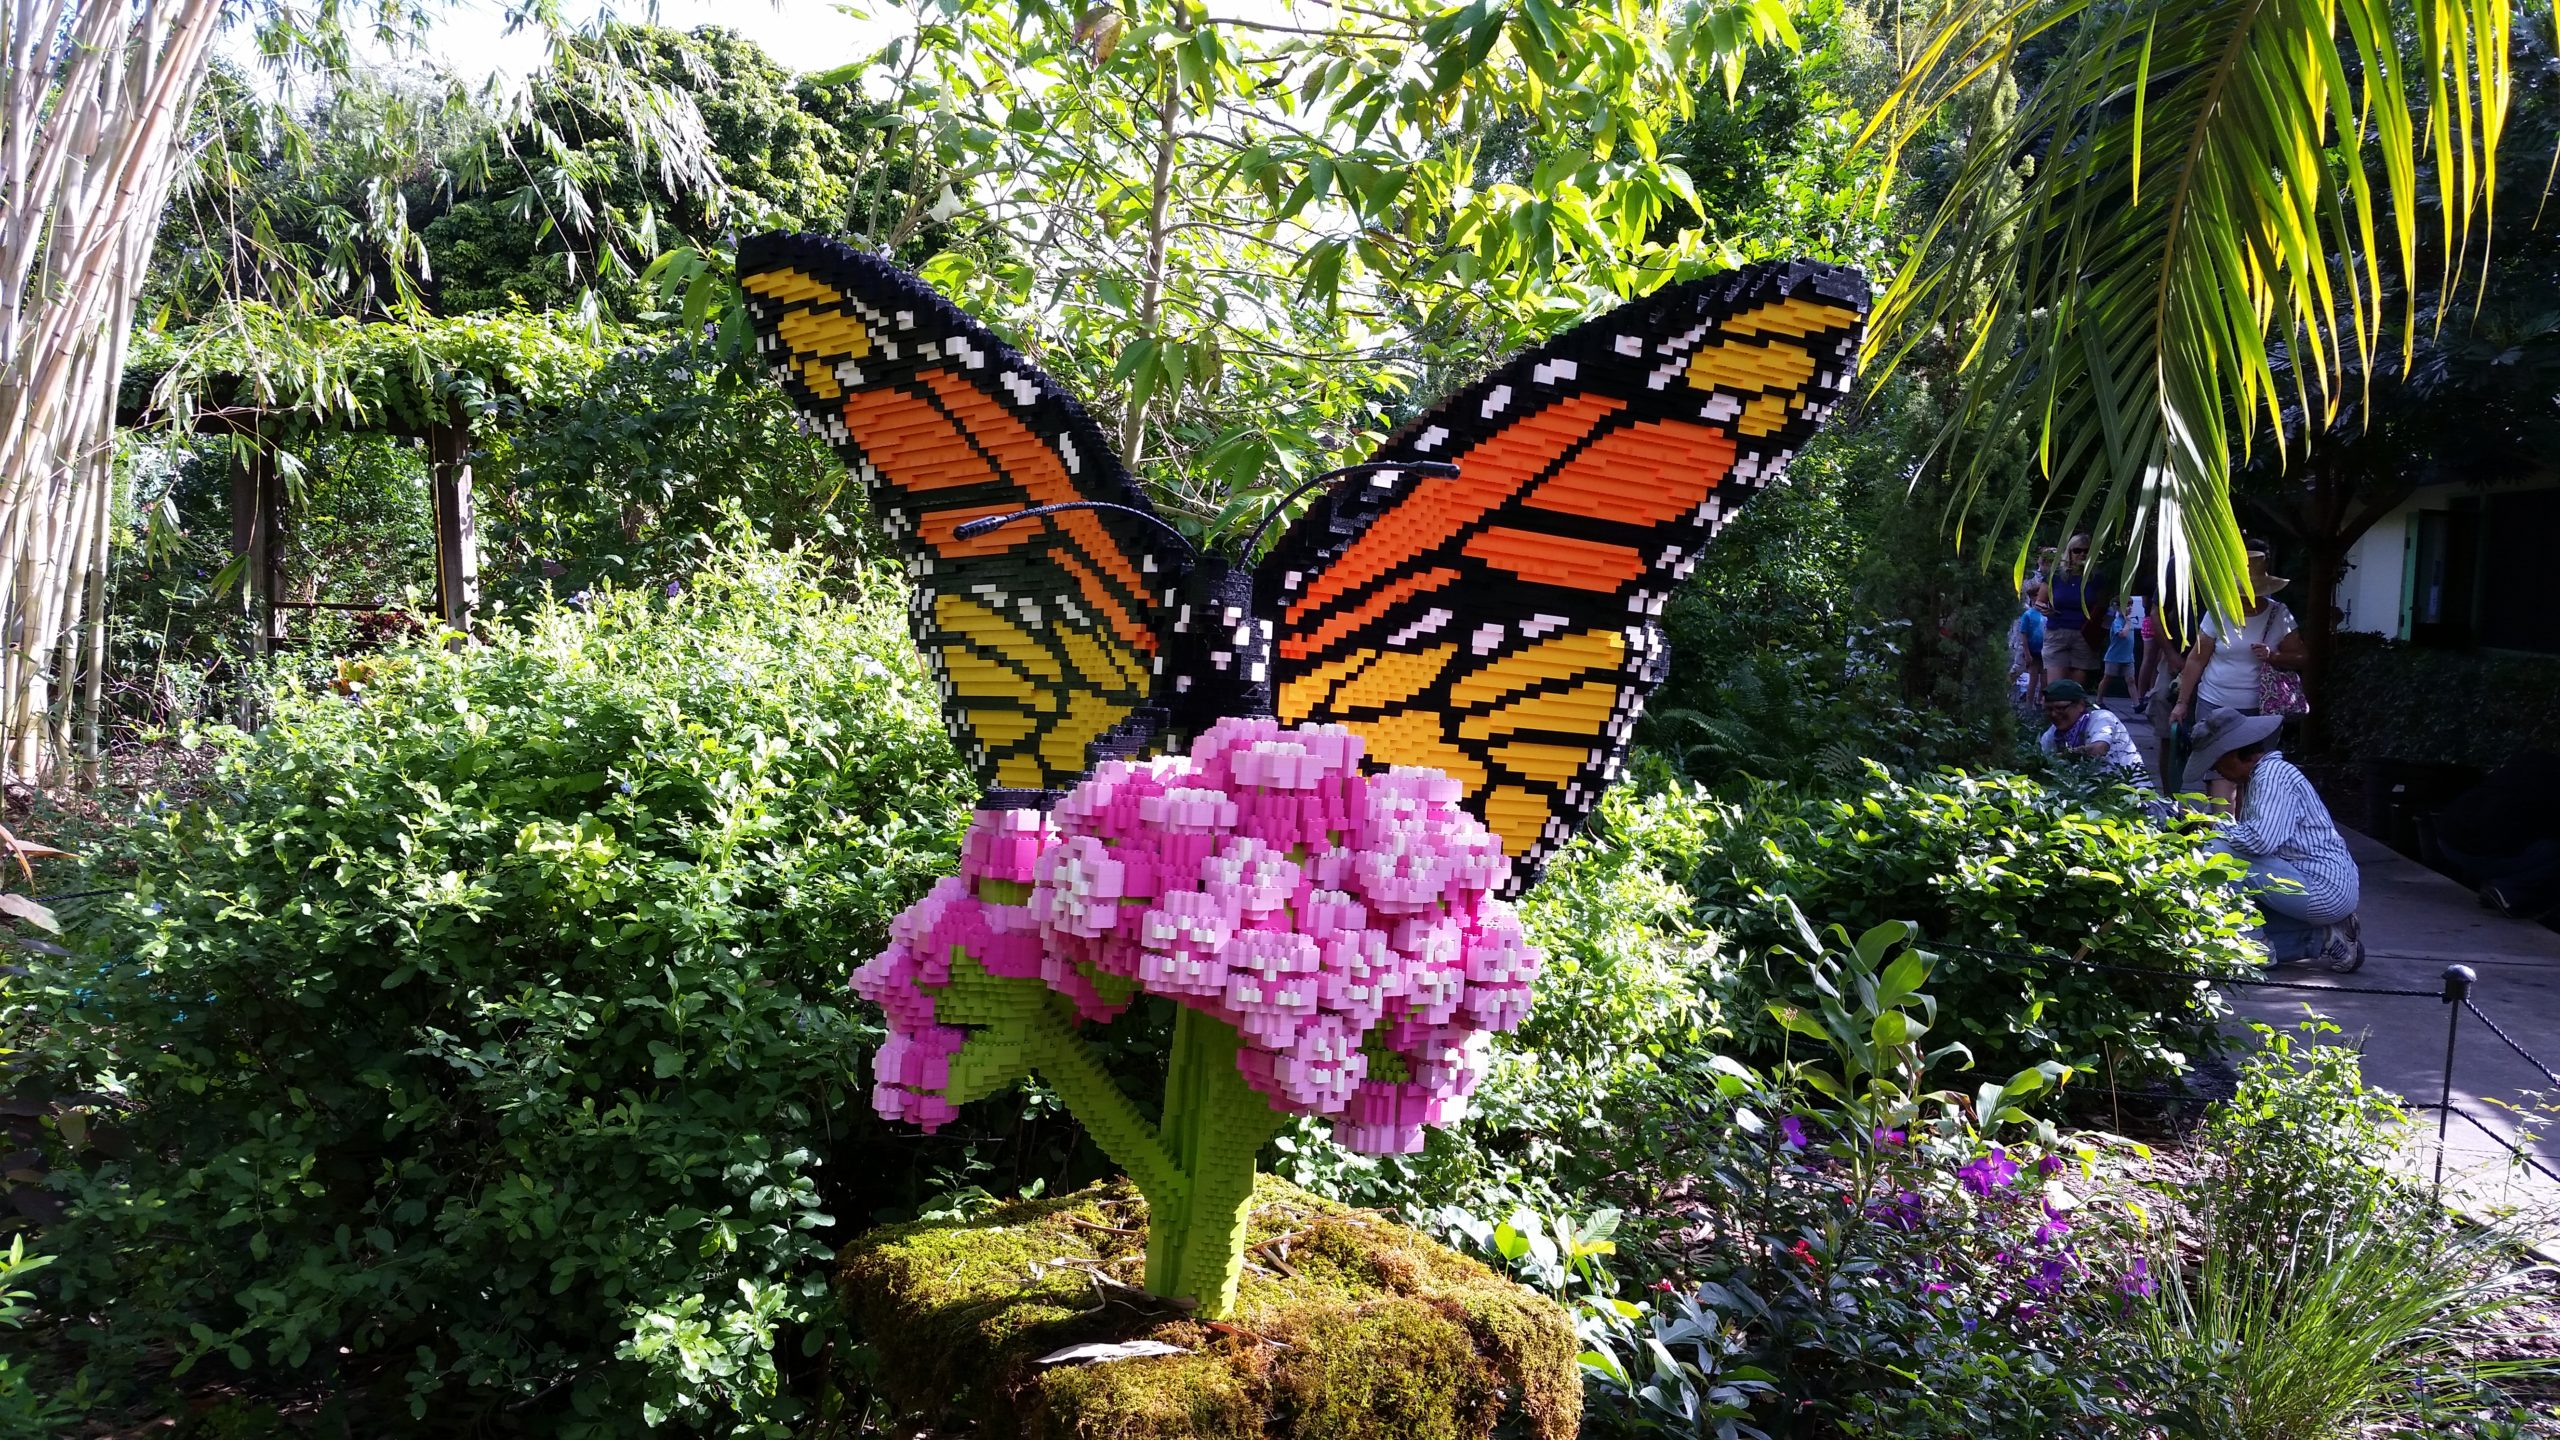 Lego butterfly sculpture.